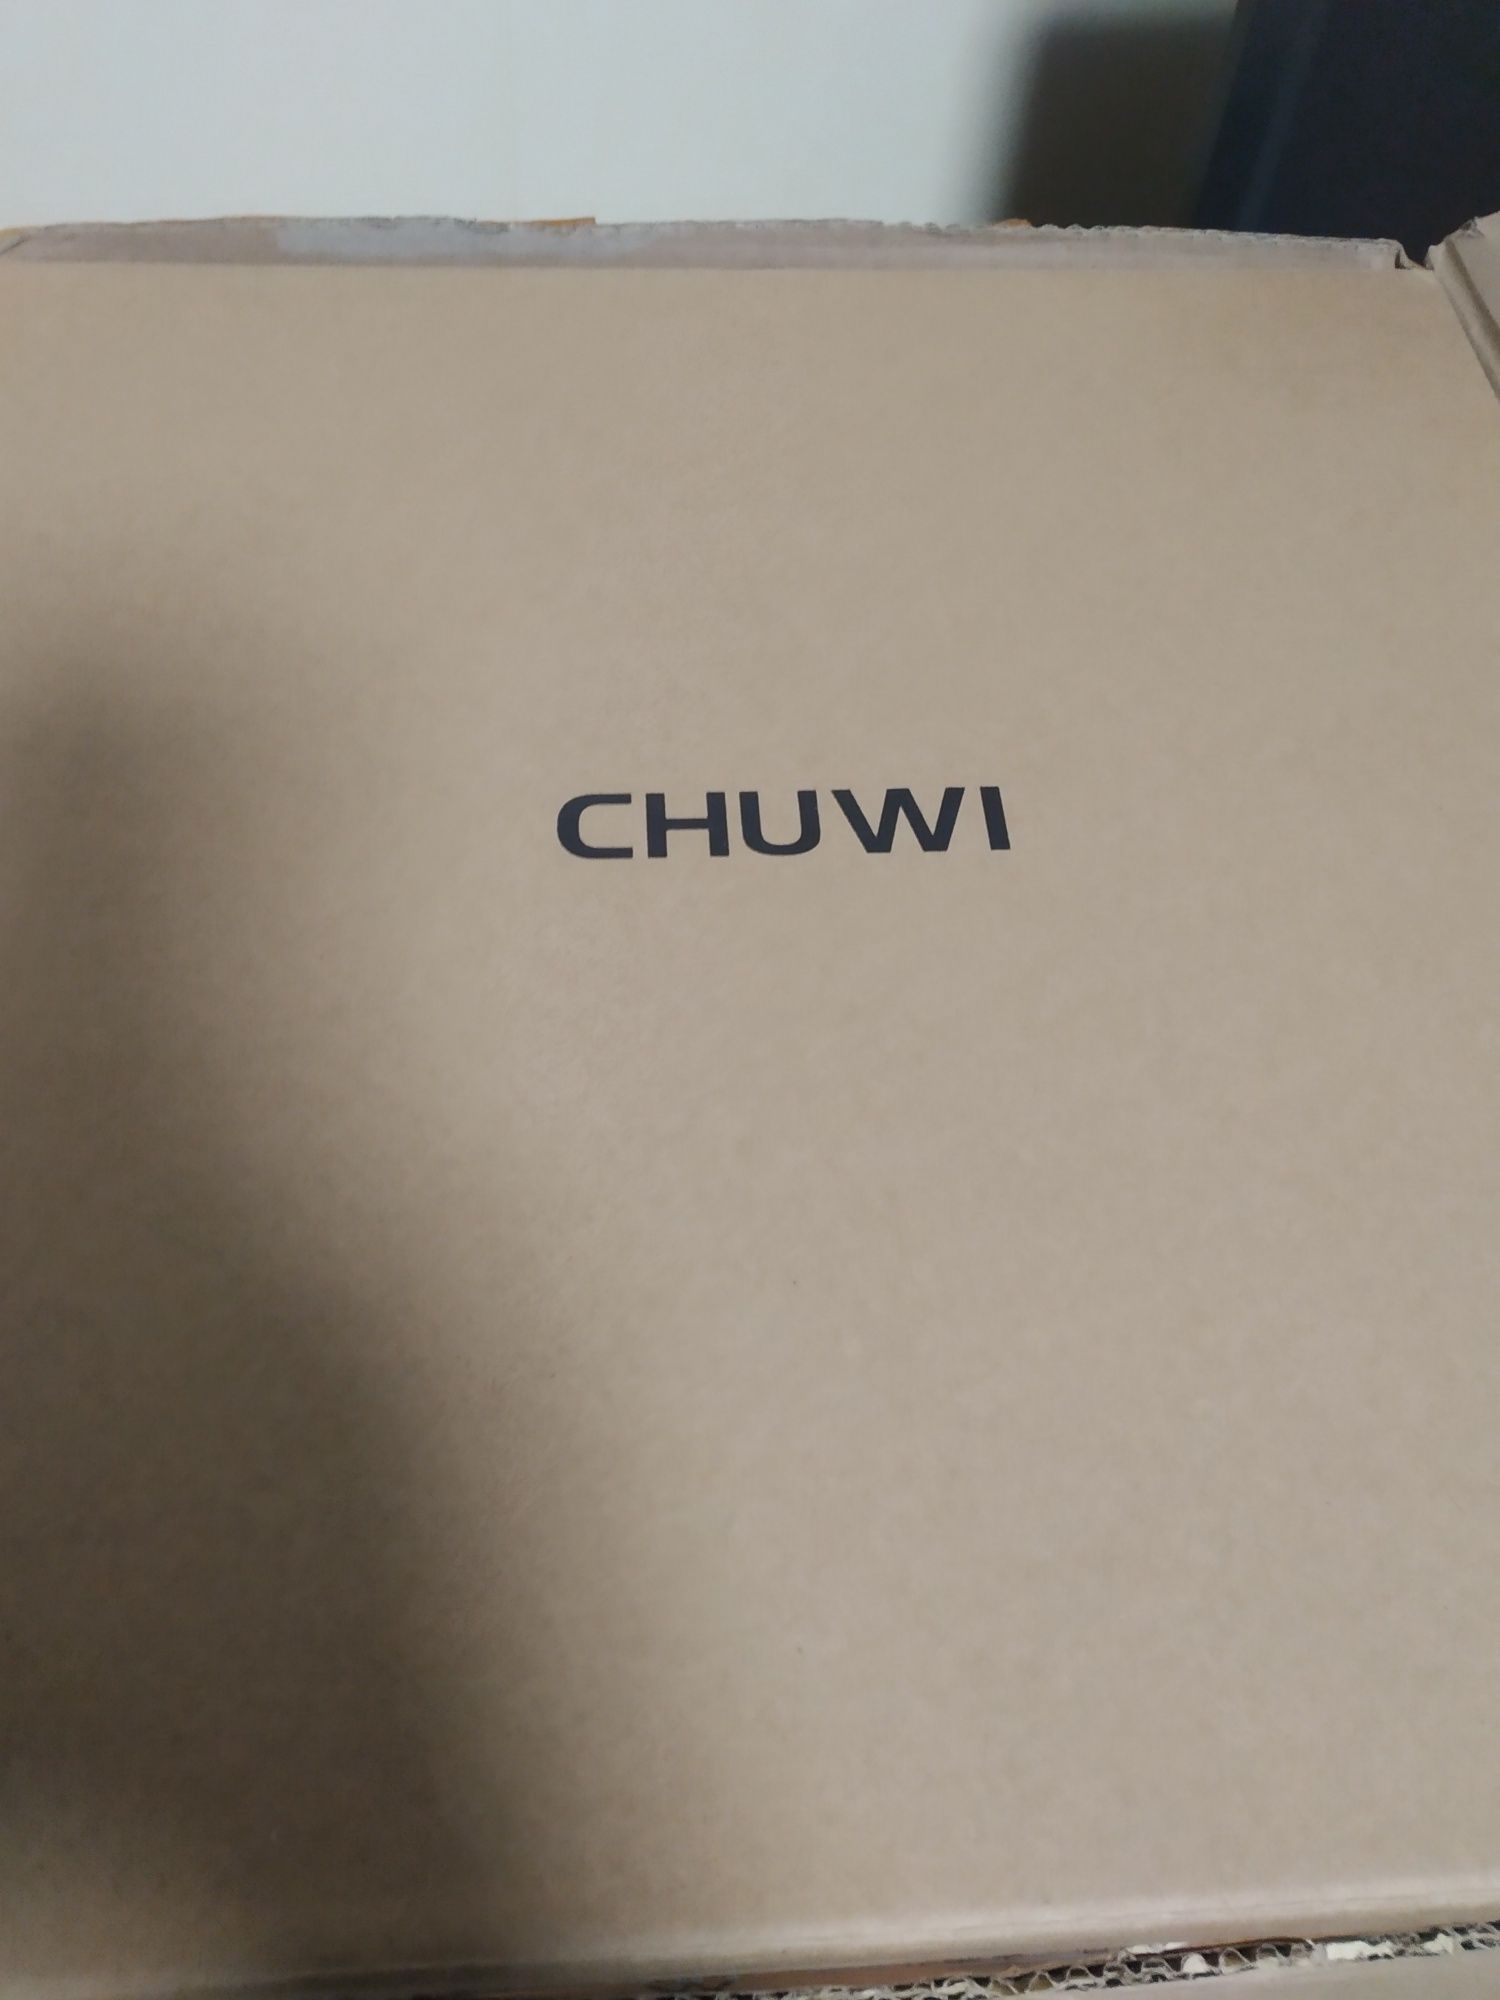 Продам новий ноутбук  Chuwi HeroBook pro+